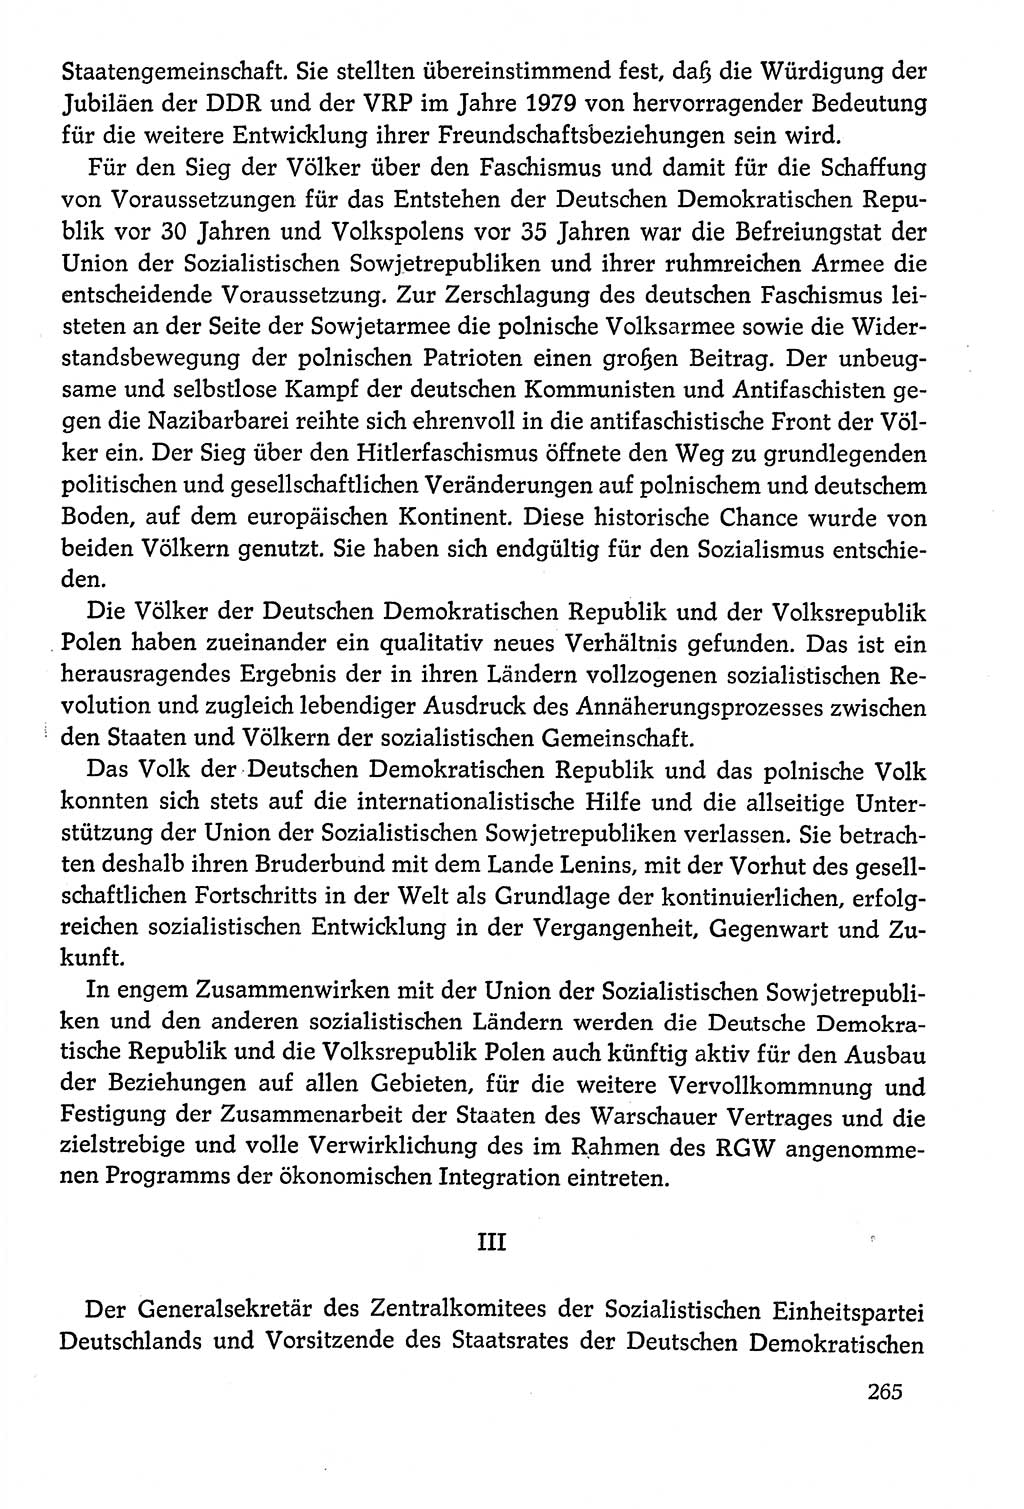 Dokumente der Sozialistischen Einheitspartei Deutschlands (SED) [Deutsche Demokratische Republik (DDR)] 1978-1979, Seite 265 (Dok. SED DDR 1978-1979, S. 265)